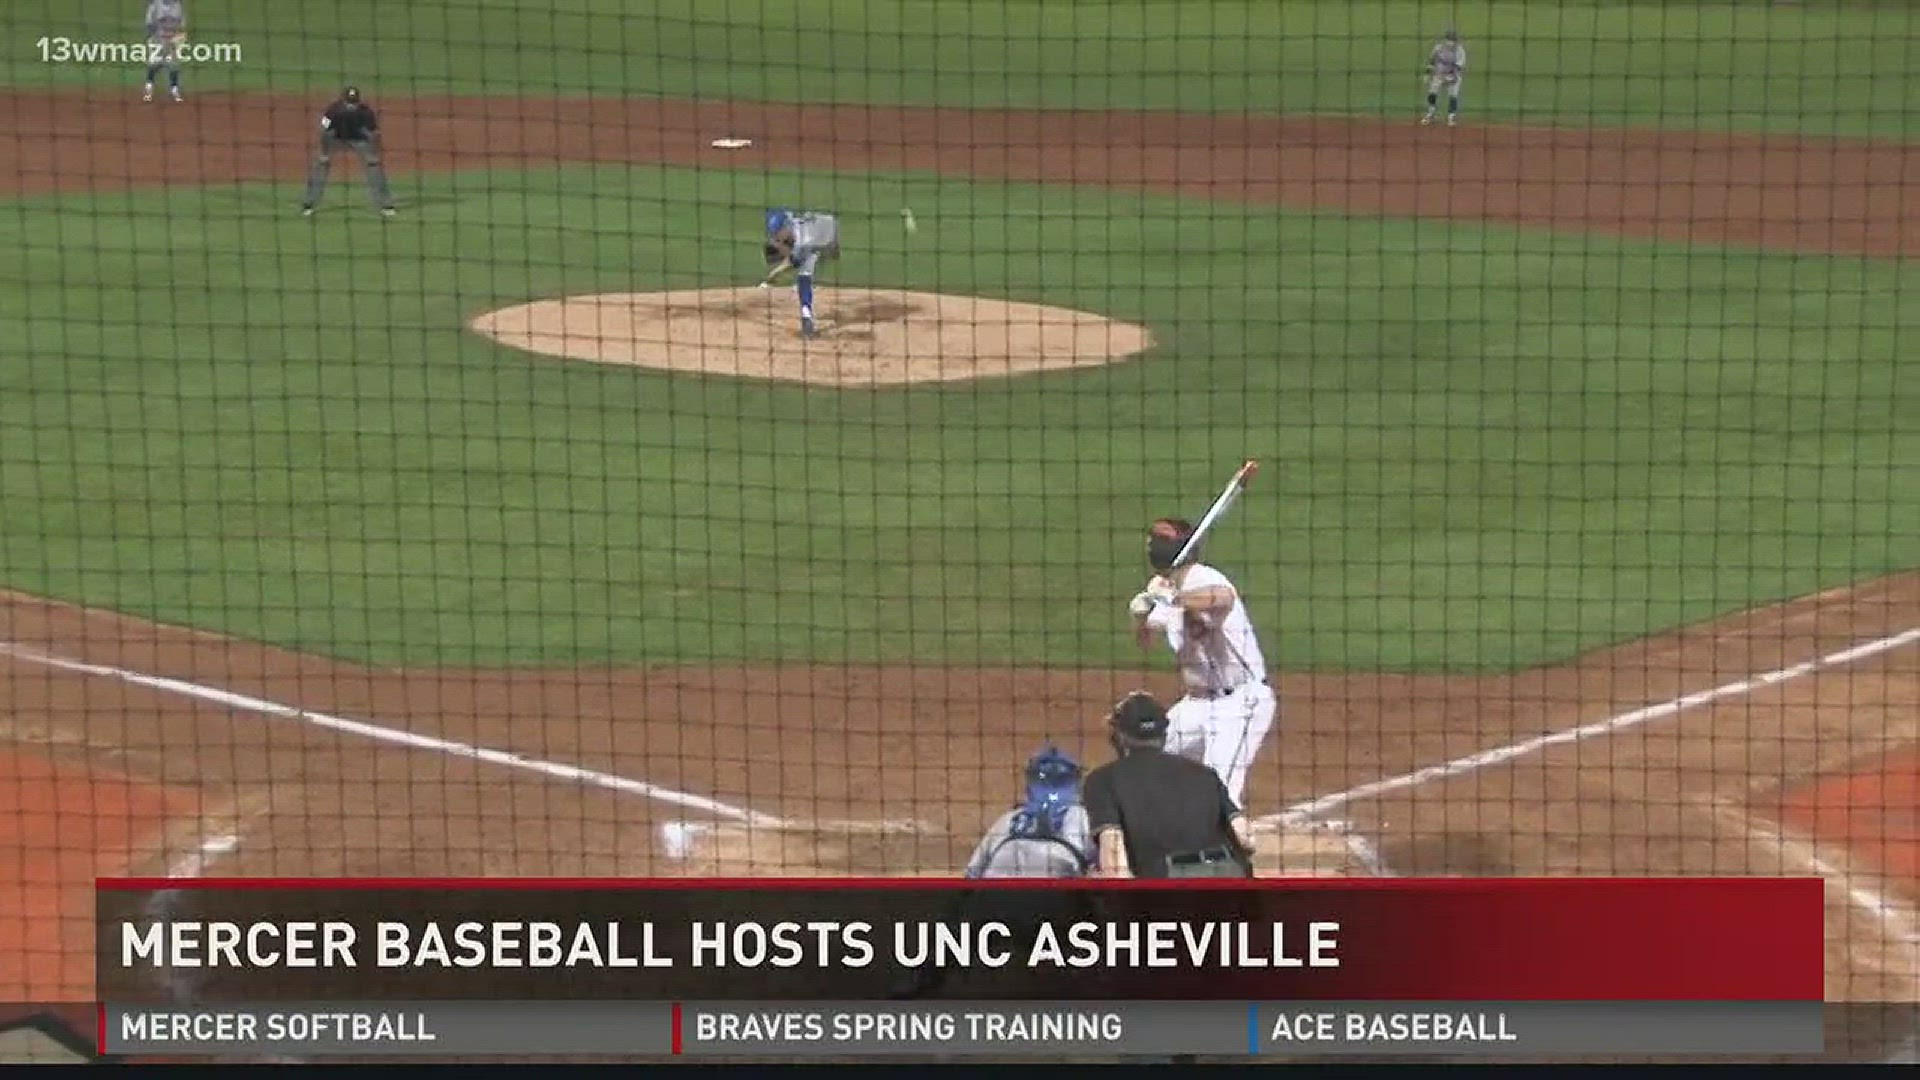 Mercer baseball hosts UNC Asheville